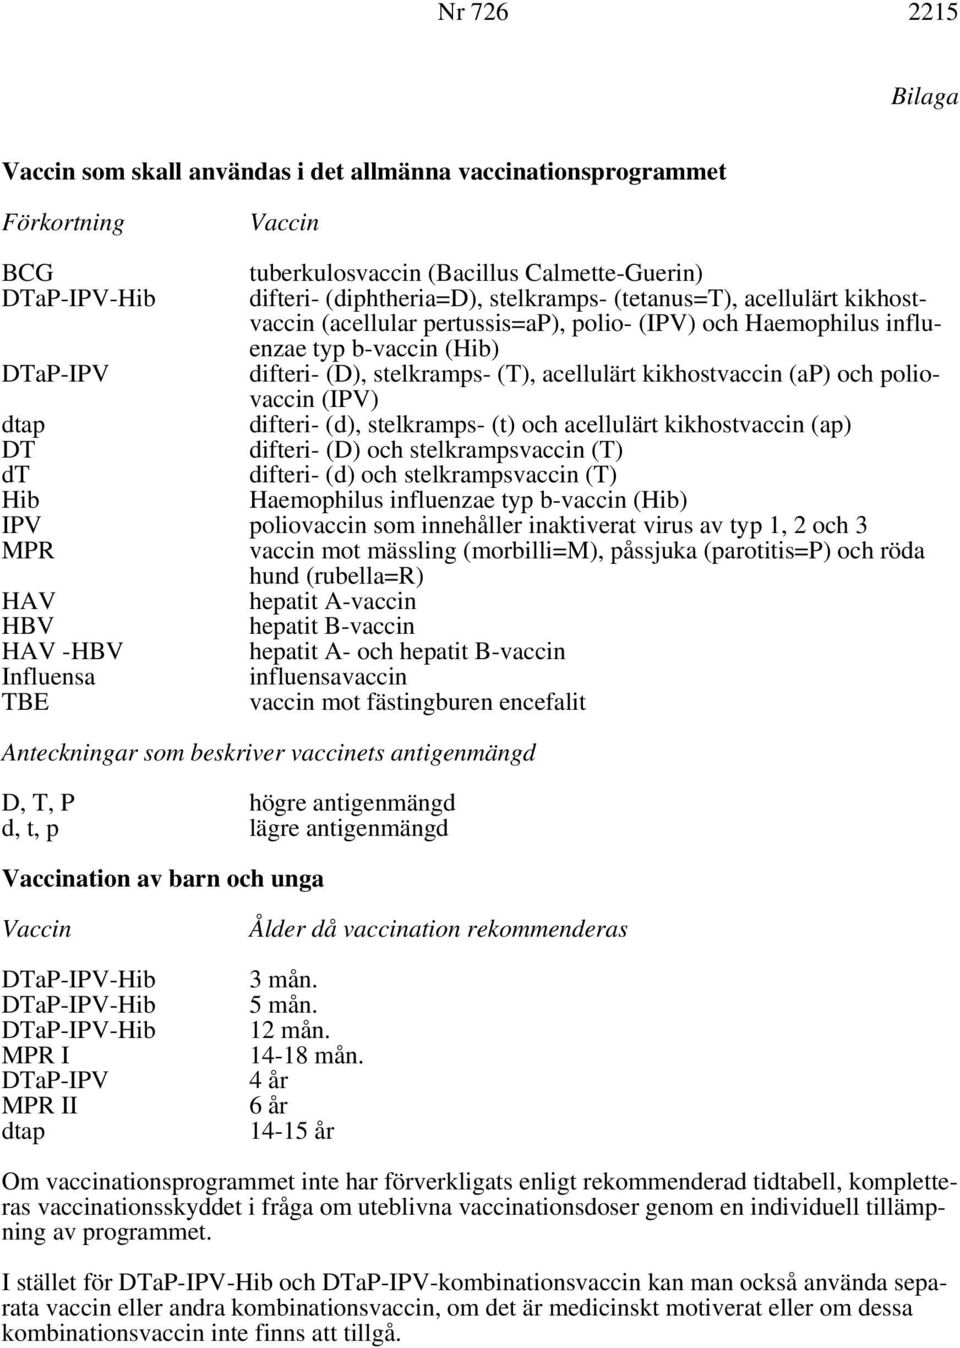 poliovaccin (IPV) dtap difteri- (d), stelkramps- (t) och acellulärt kikhostvaccin (ap) DT dt difteri- (D) och stelkrampsvaccin (T) difteri- (d) och stelkrampsvaccin (T) Hib Haemophilus influenzae typ